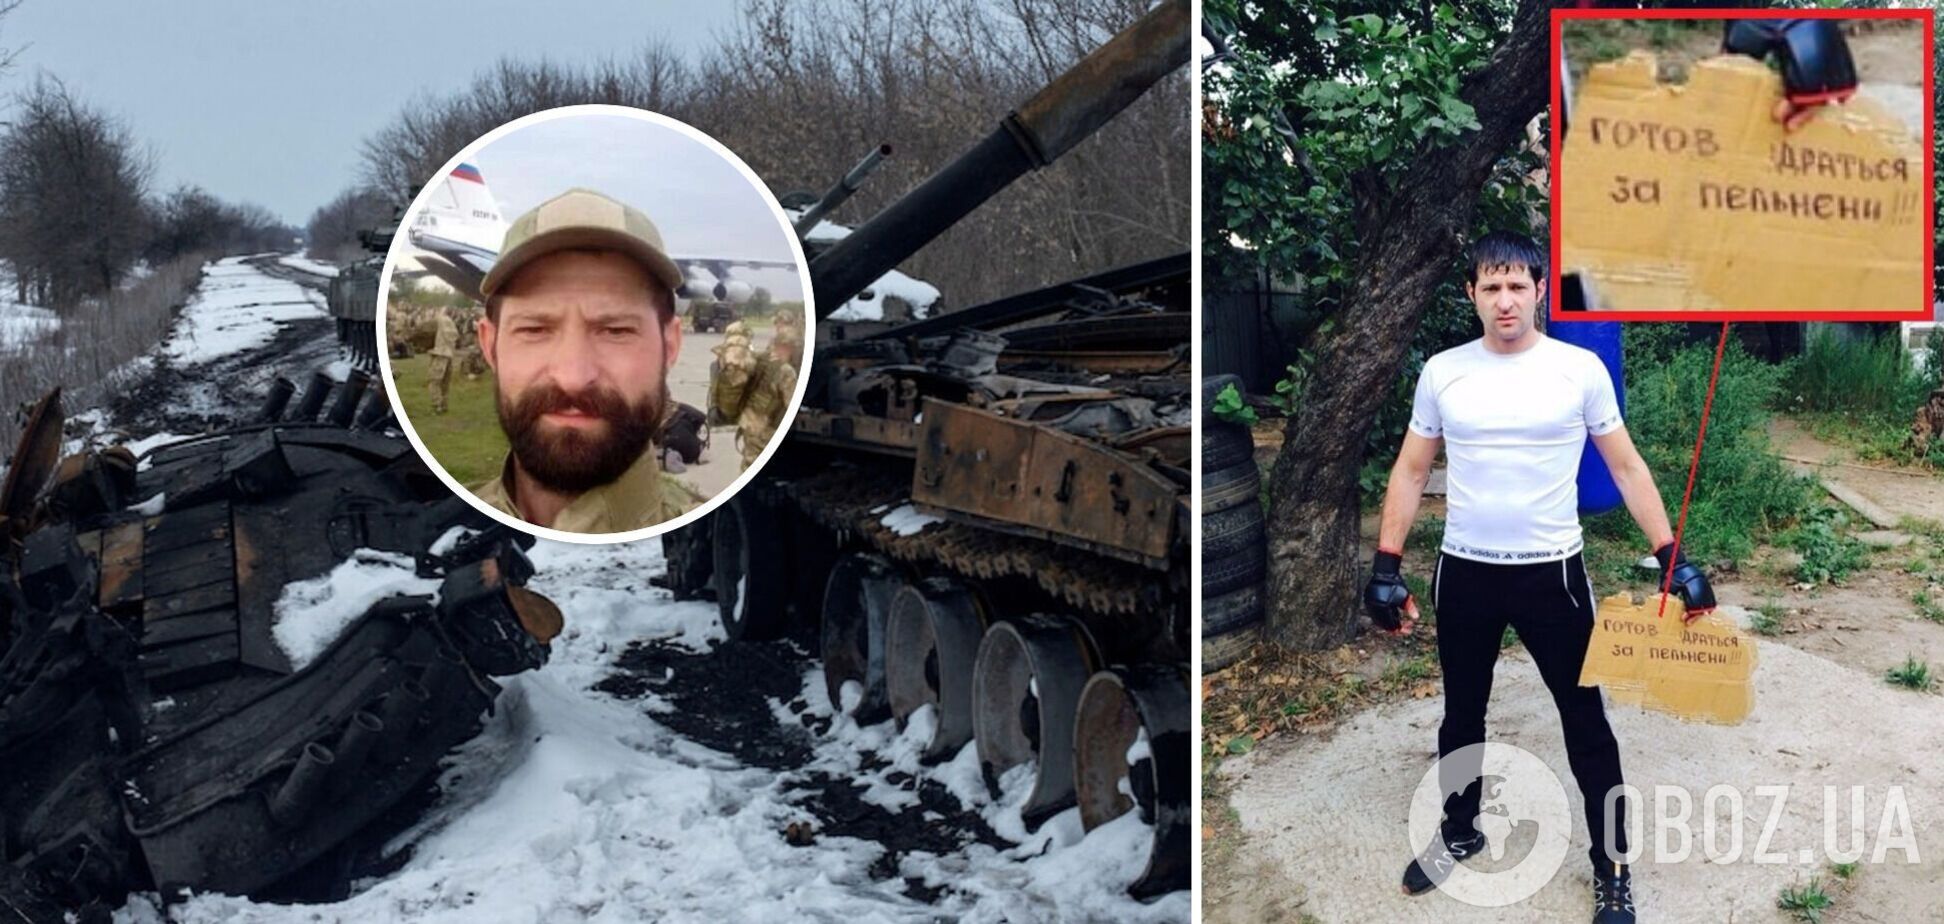 Провел 28 часов в пути, чтобы умереть в Украине: ВСУ ликвидировали оккупанта, который был 'готов биться за пельмени'. Фото